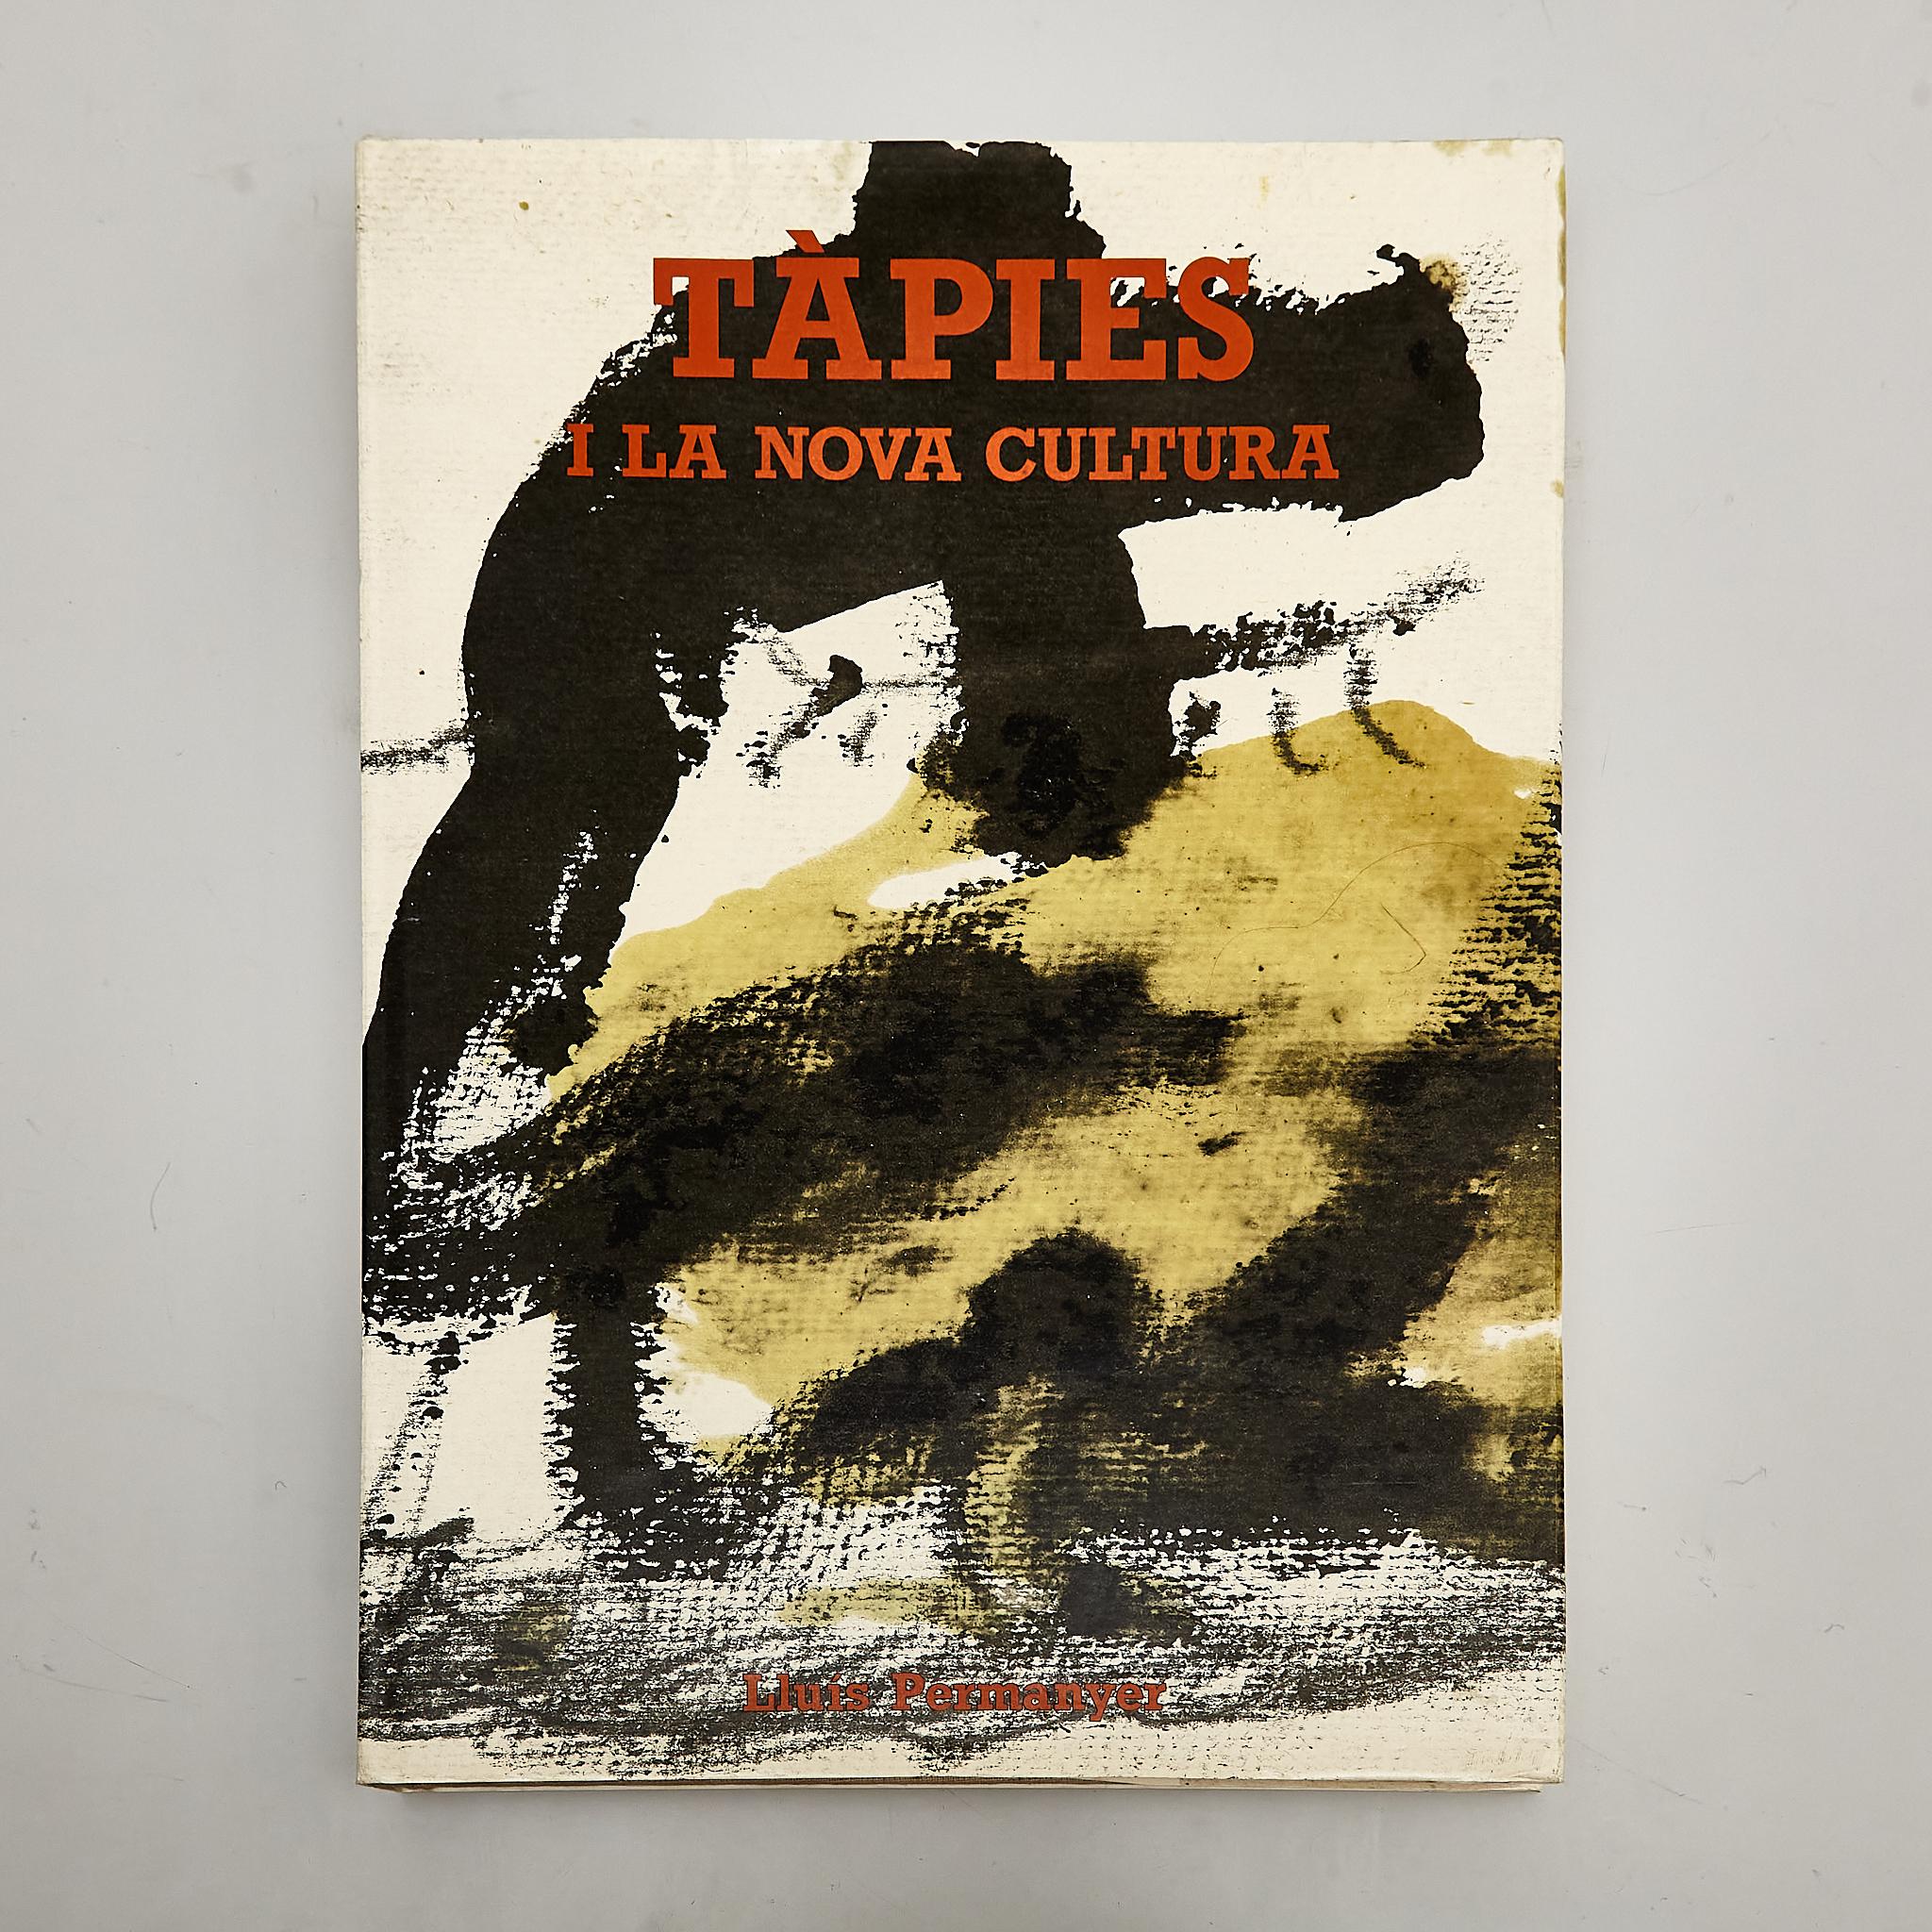 Entdecken Sie das künstlerische Genie von Antoni Tàpies mit diesem bemerkenswerten Buch aus dem Jahr 1986 mit dem Titel 